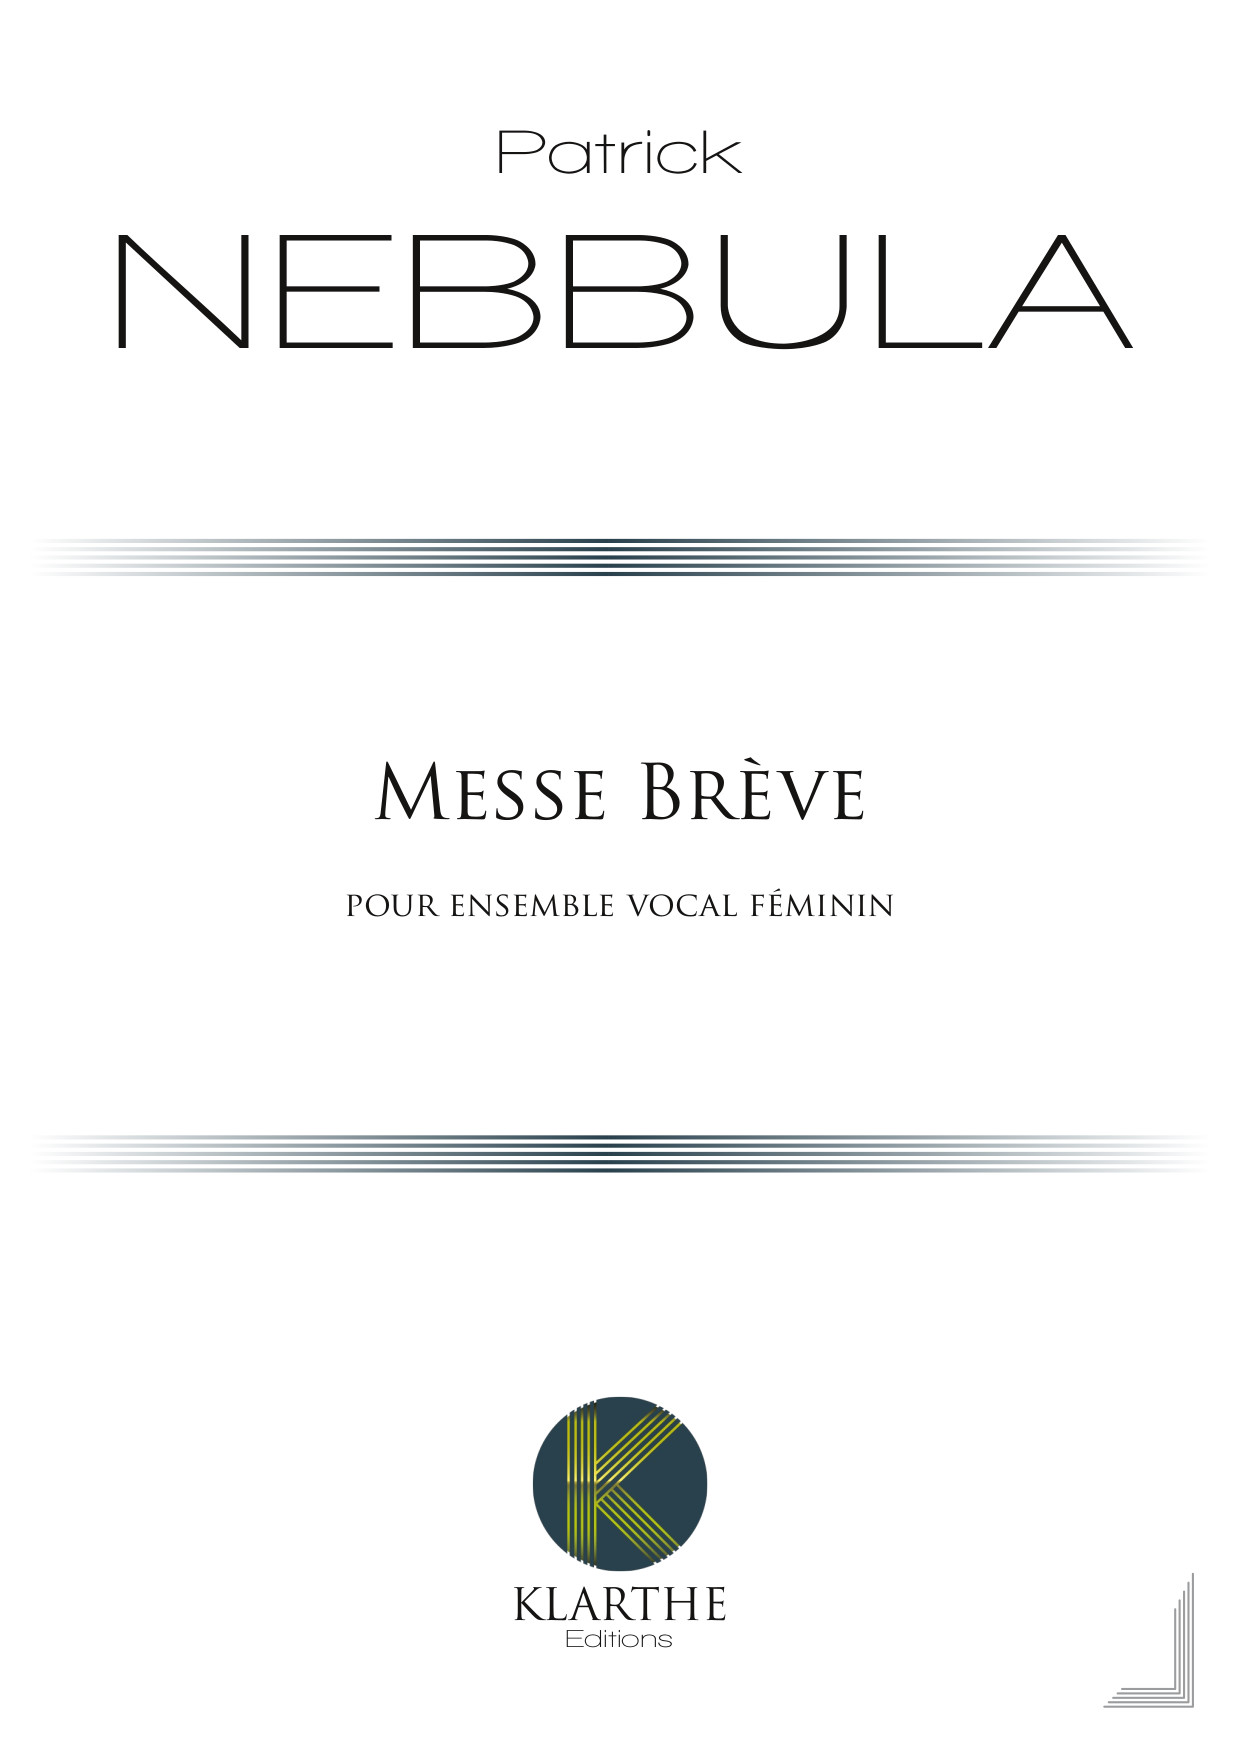 Messe Brve (NEBBULA PATRICK)